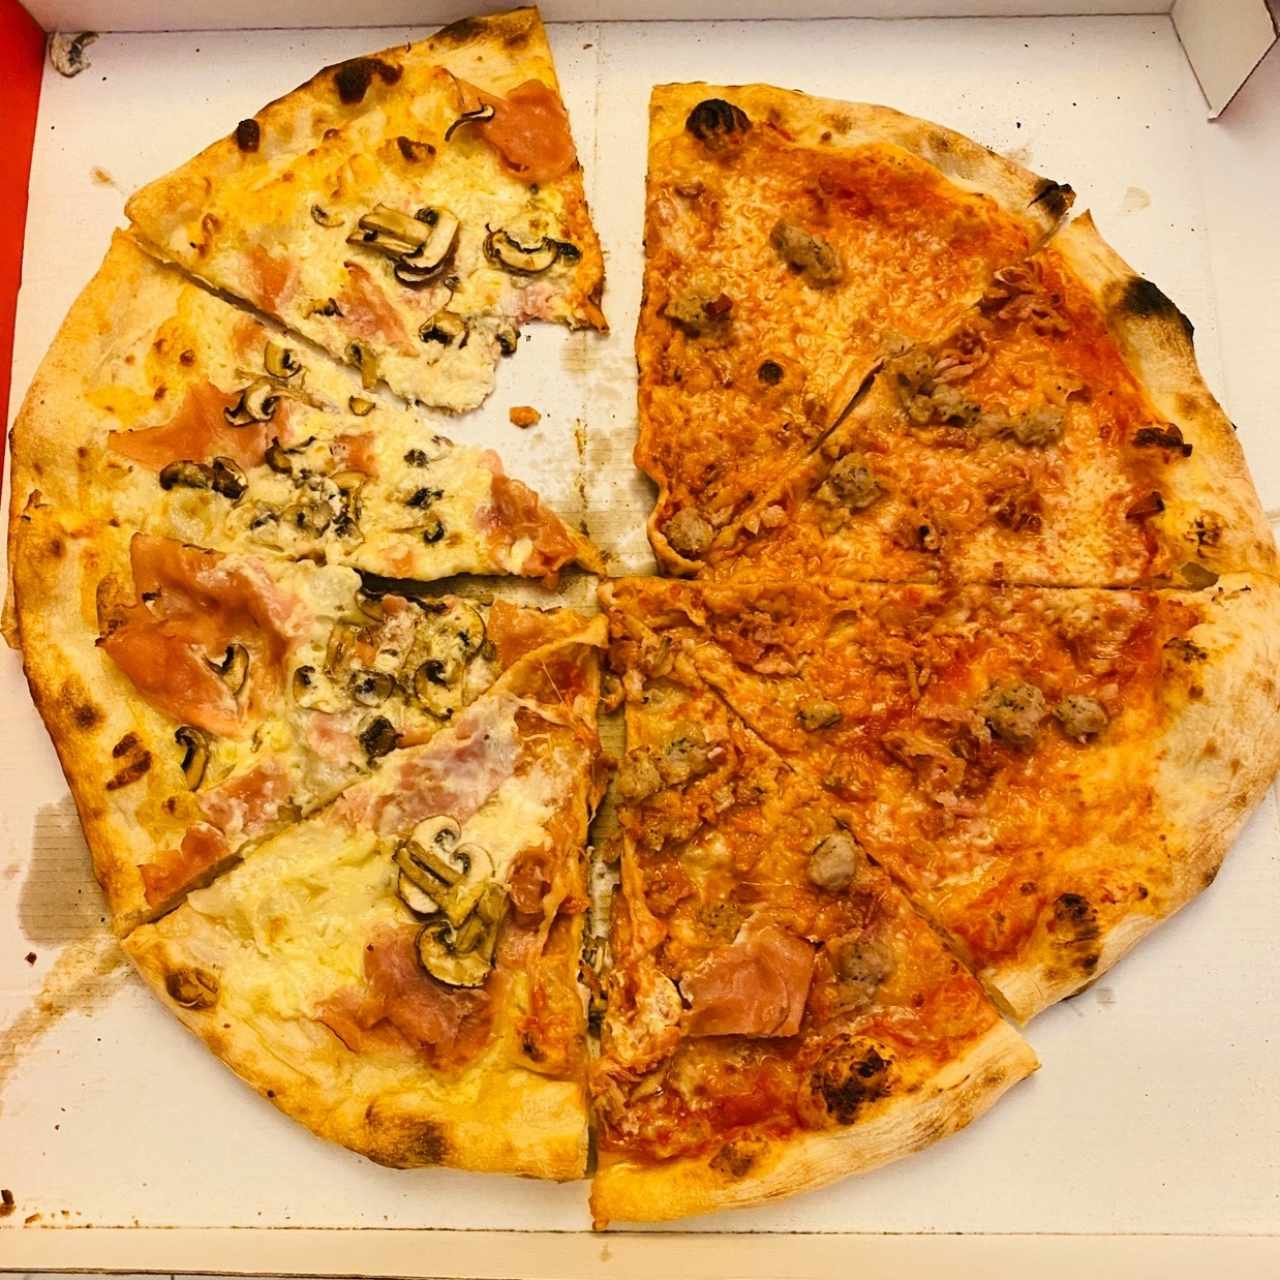 Pizza fashion Giorgio Armani.